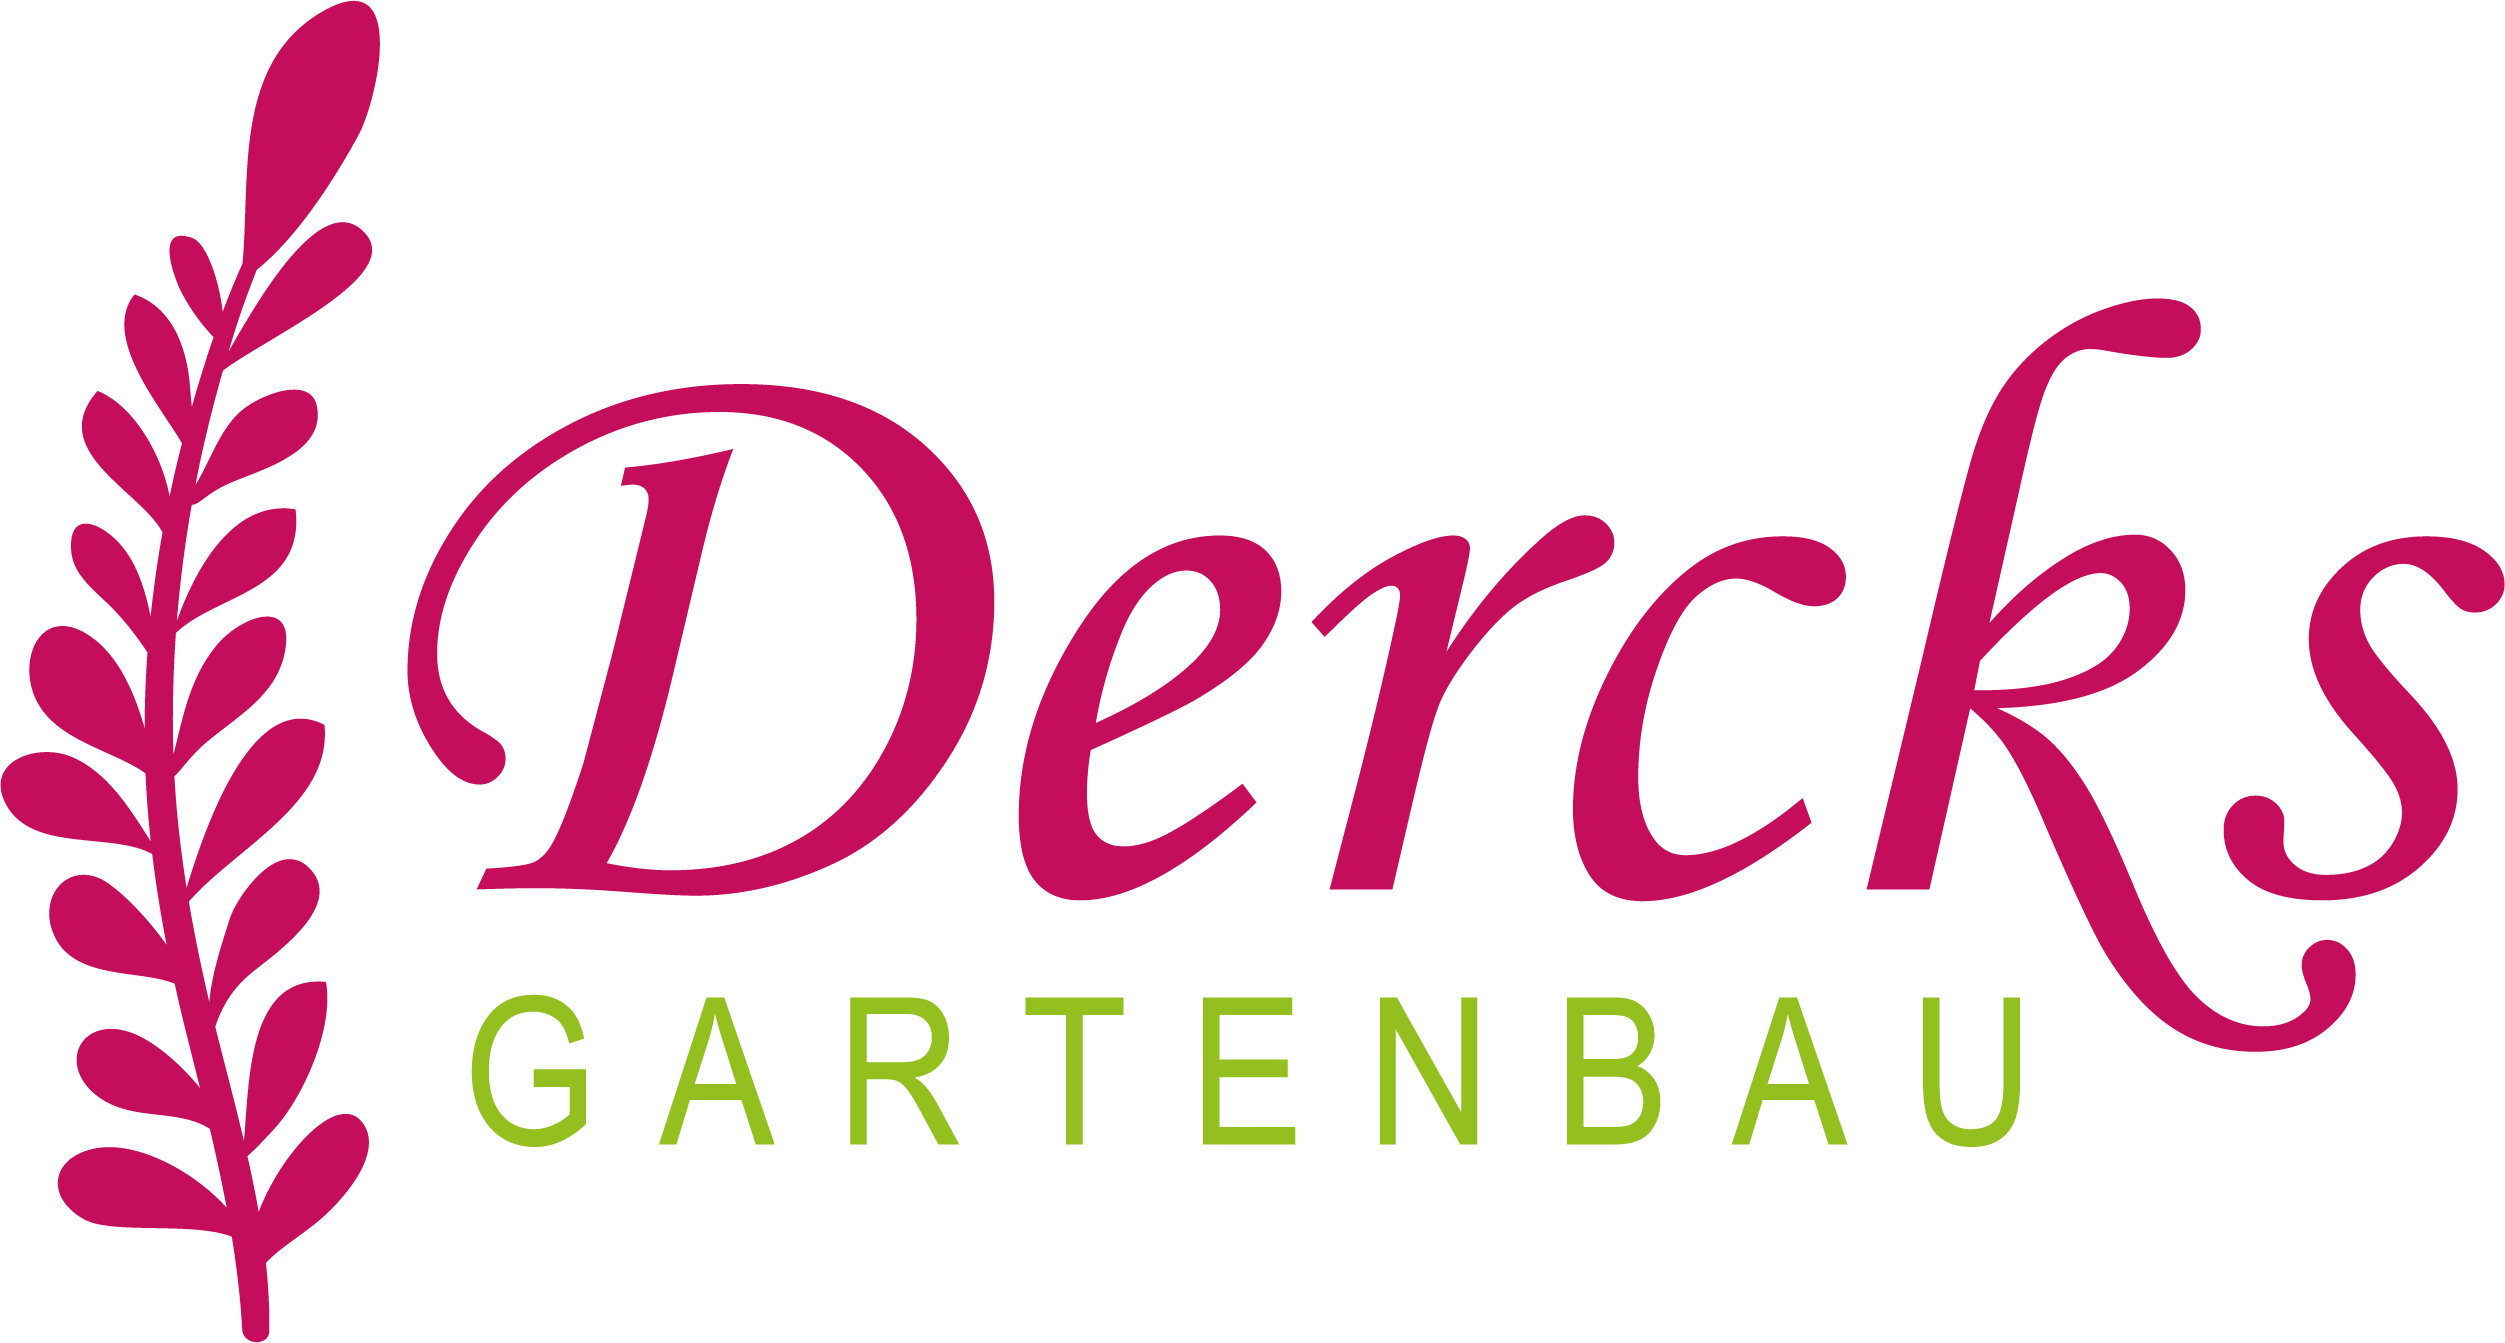 Dercks Gartenbau | Geldern-Walbeck